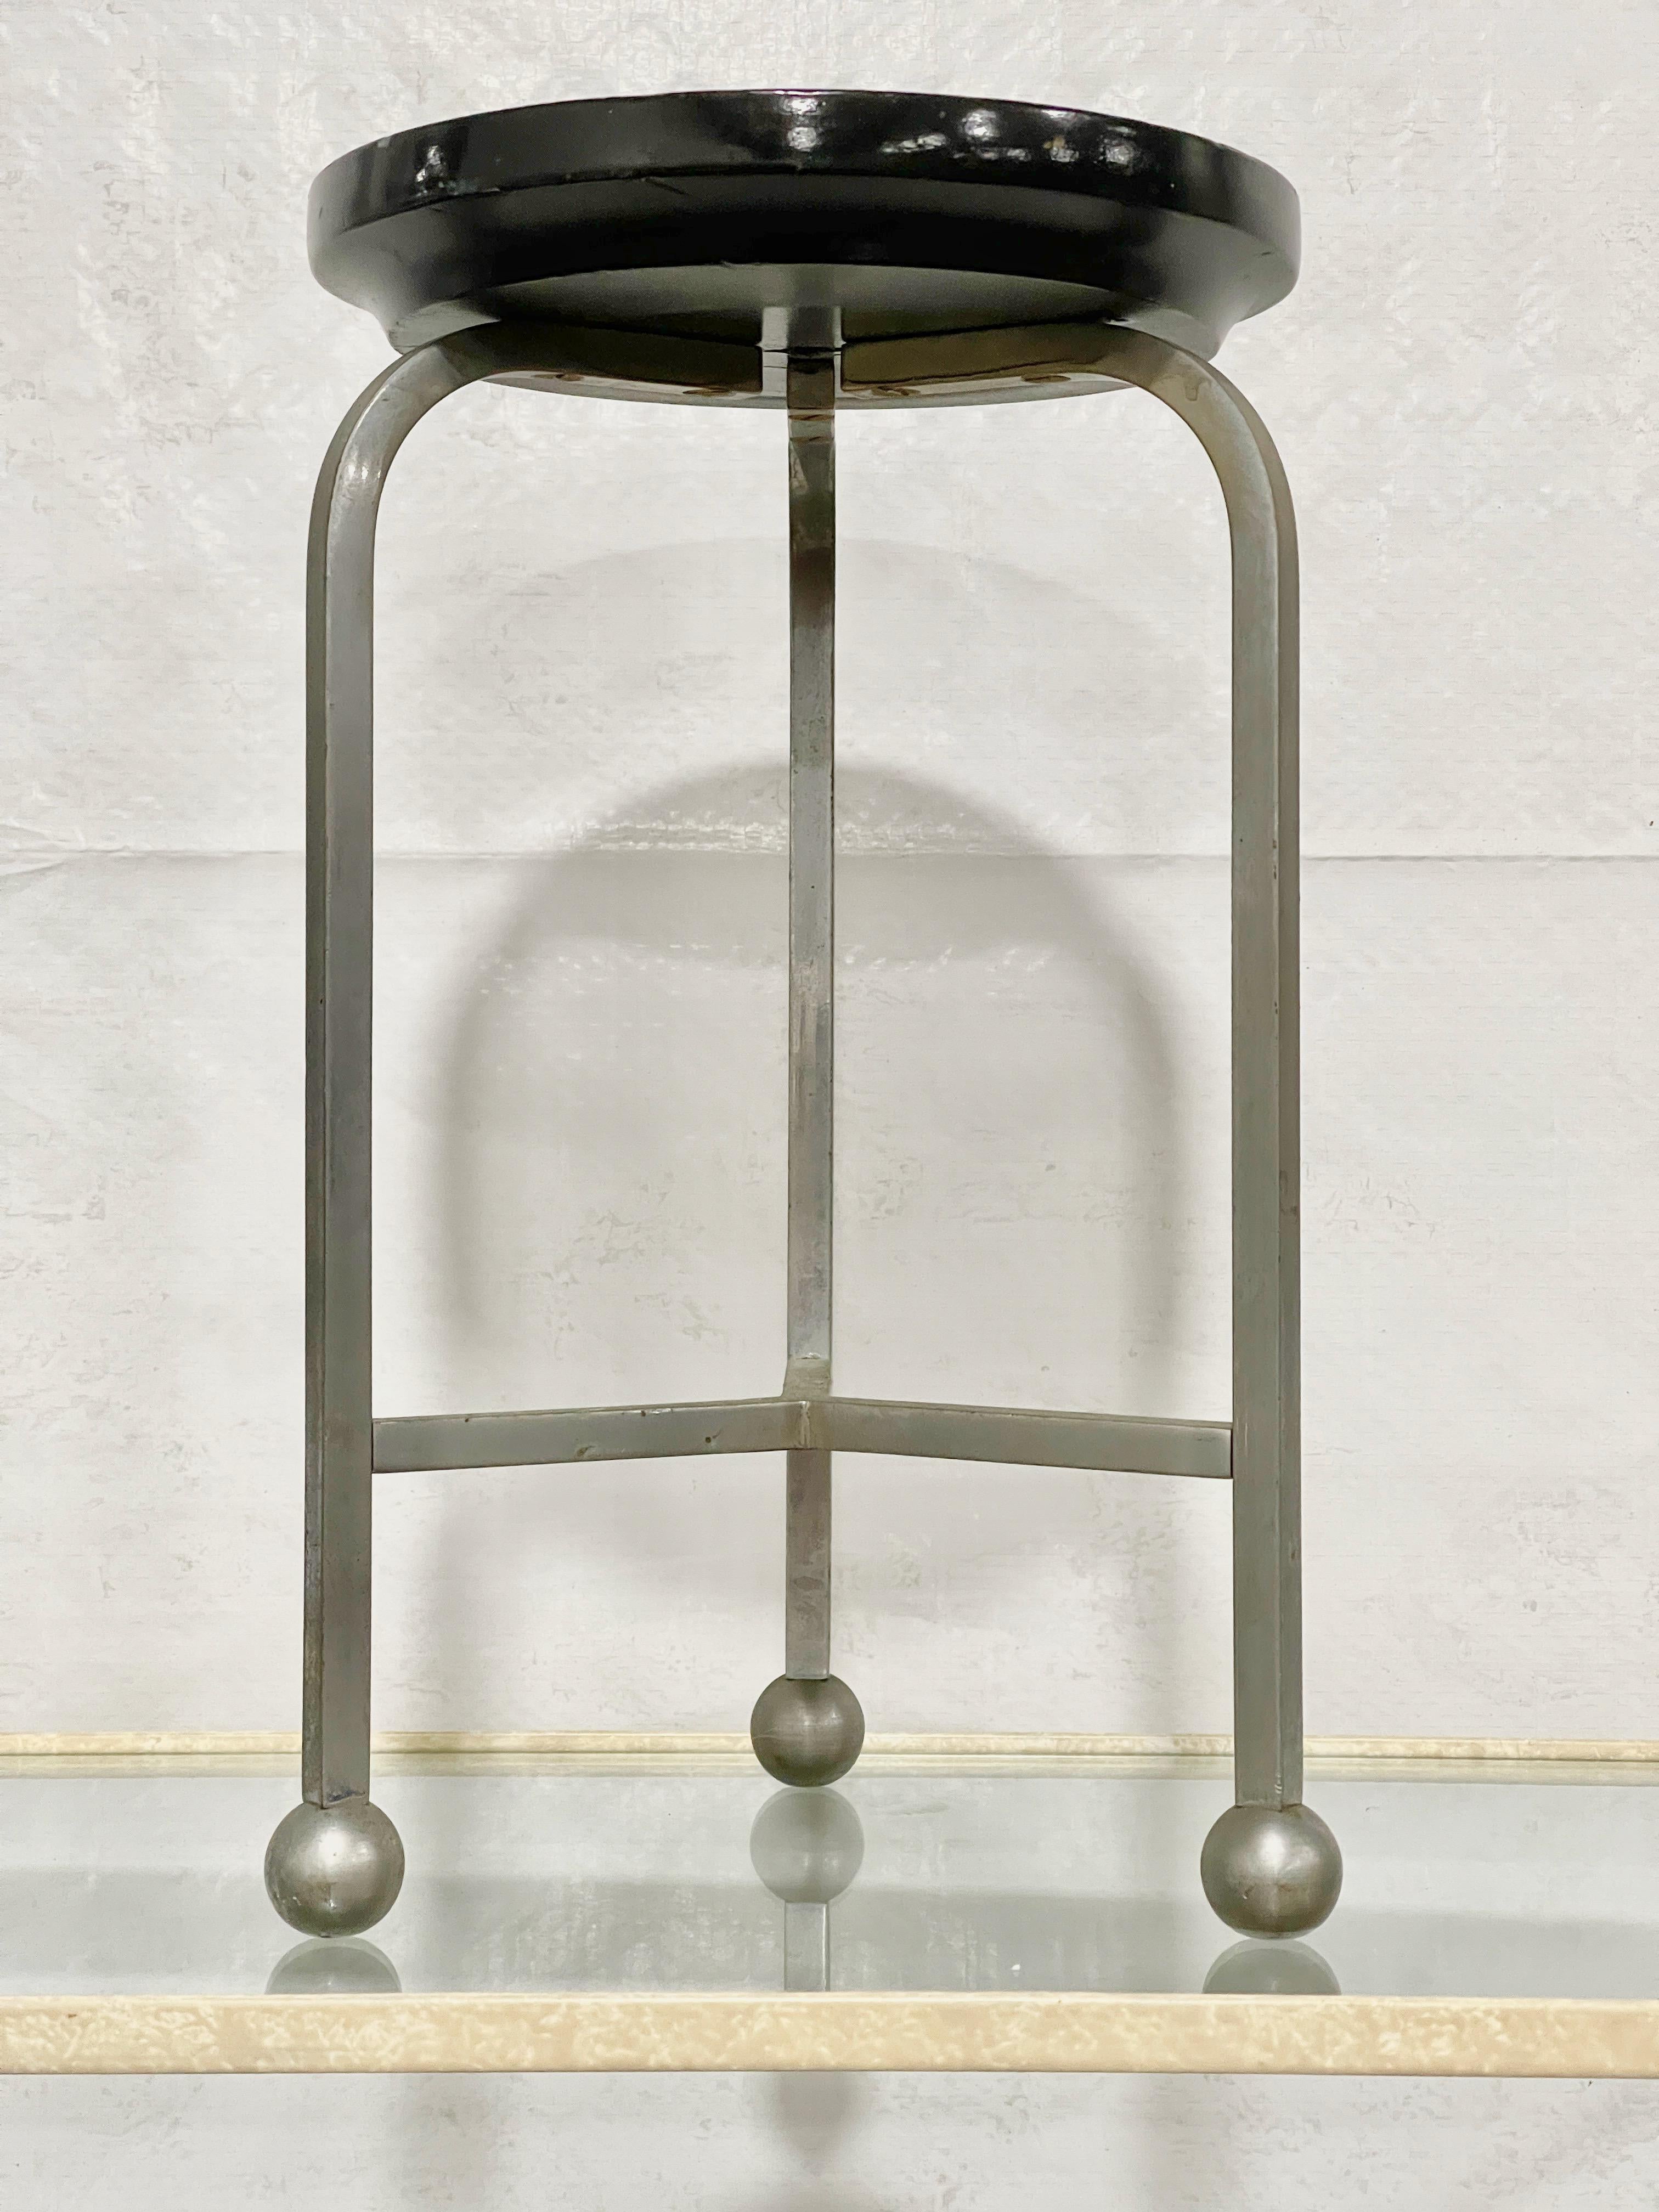 Intéressant et inhabituel tabouret Bauhaus miniature à trois pieds, probablement un échantillon ou une maquette de vendeur. 
Le siège rond est en bois tourné laqué noir ~7.5 pouces de diamètre par 1 pouce d'épaisseur. 
Trois pieds en arc courbés